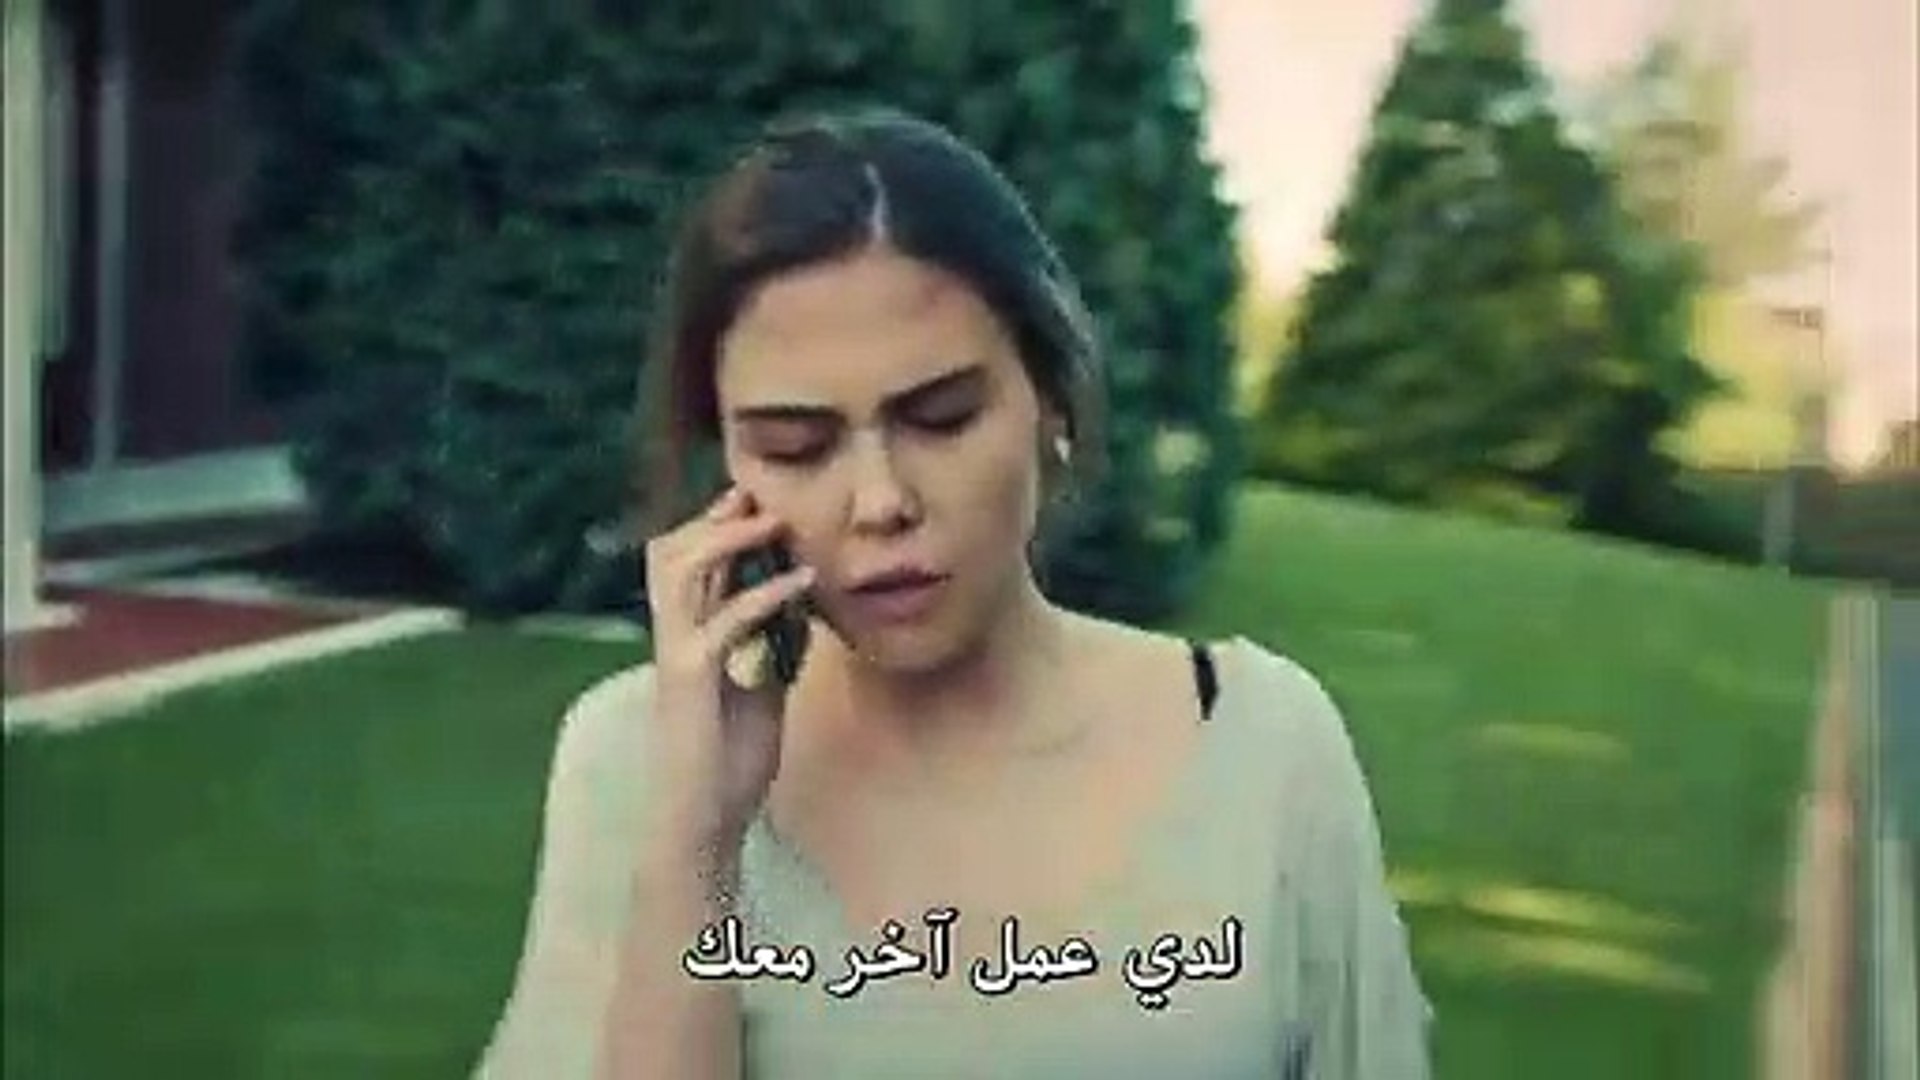 مسلسل عروس إسطنبول الموسم الثاني الحلقة 37 الأخيرة مترجمة للعربية القسم 2 Video Dailymotion